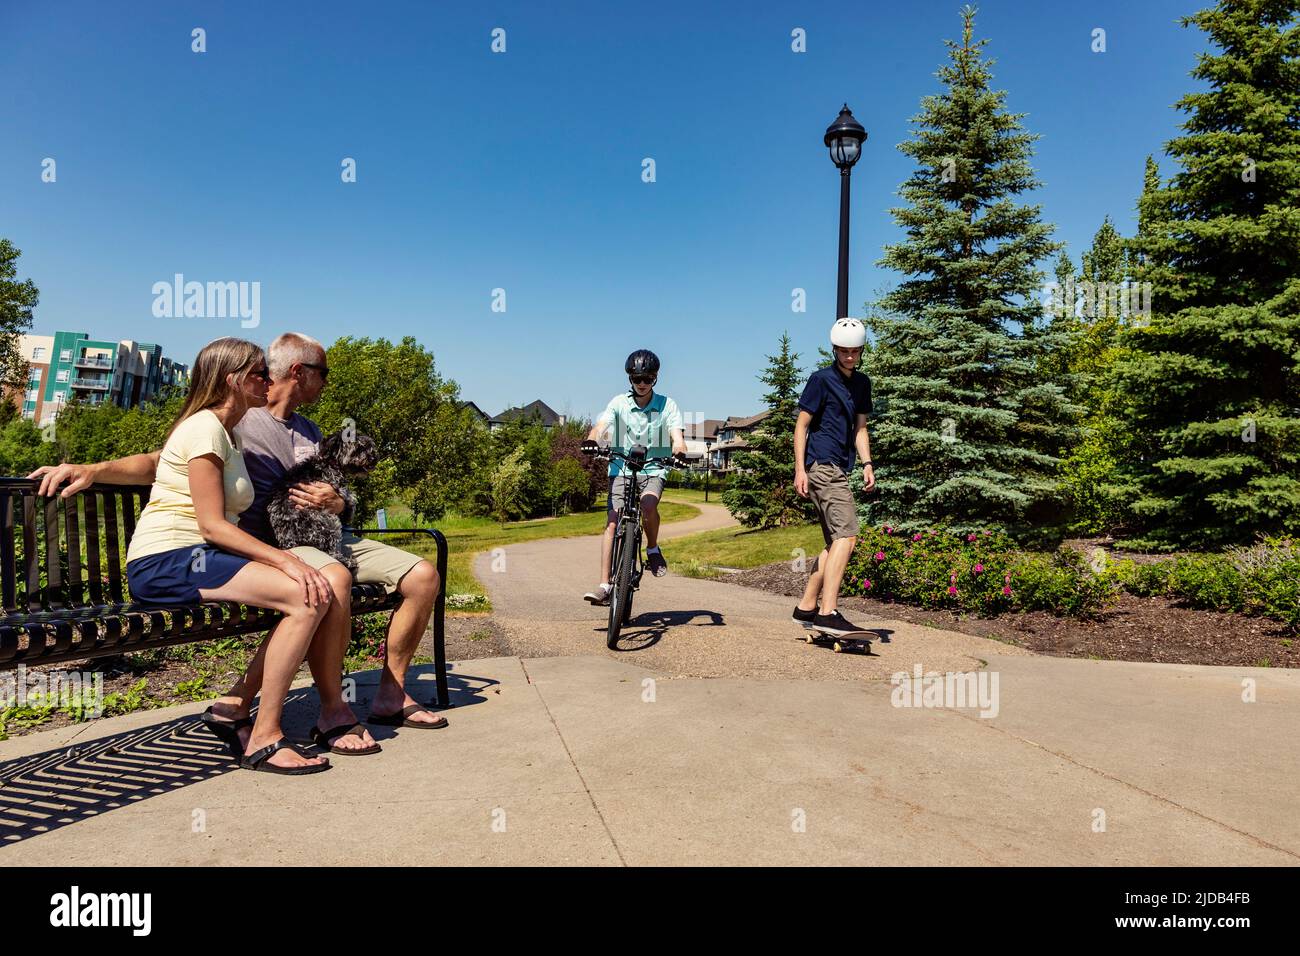 Fratelli che trascorrono del tempo insieme nel quartiere, uno in bicicletta e uno in skateboard, mentre i genitori si siedono con il cane su una panchina e guardano Foto Stock